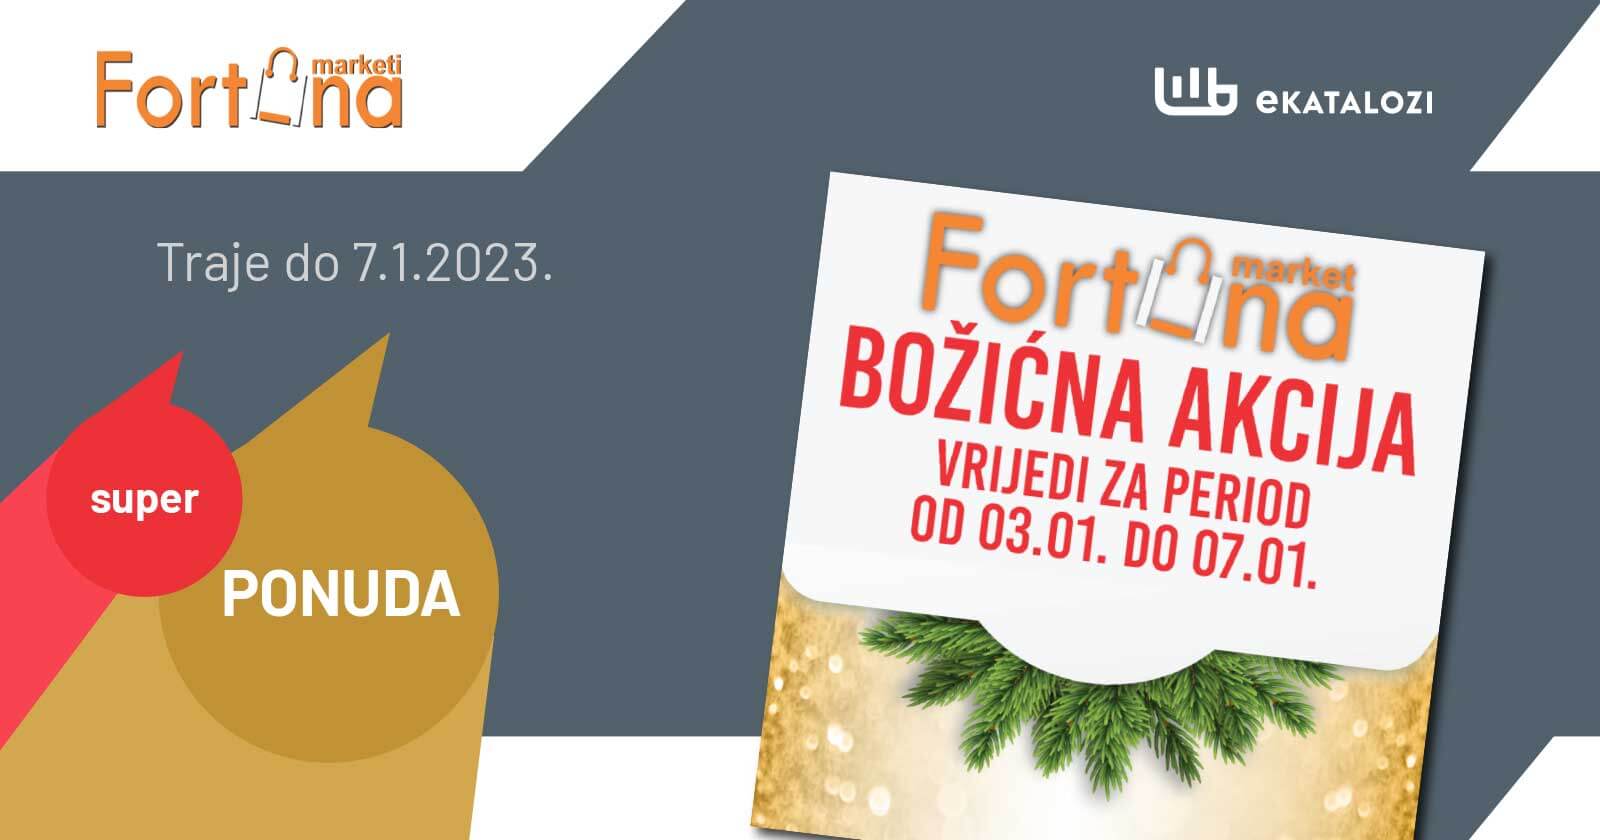 FORTUNA Bozicna akcija JANUAR 2023. Ponuda traje od 3.1. do 7.1.2023.